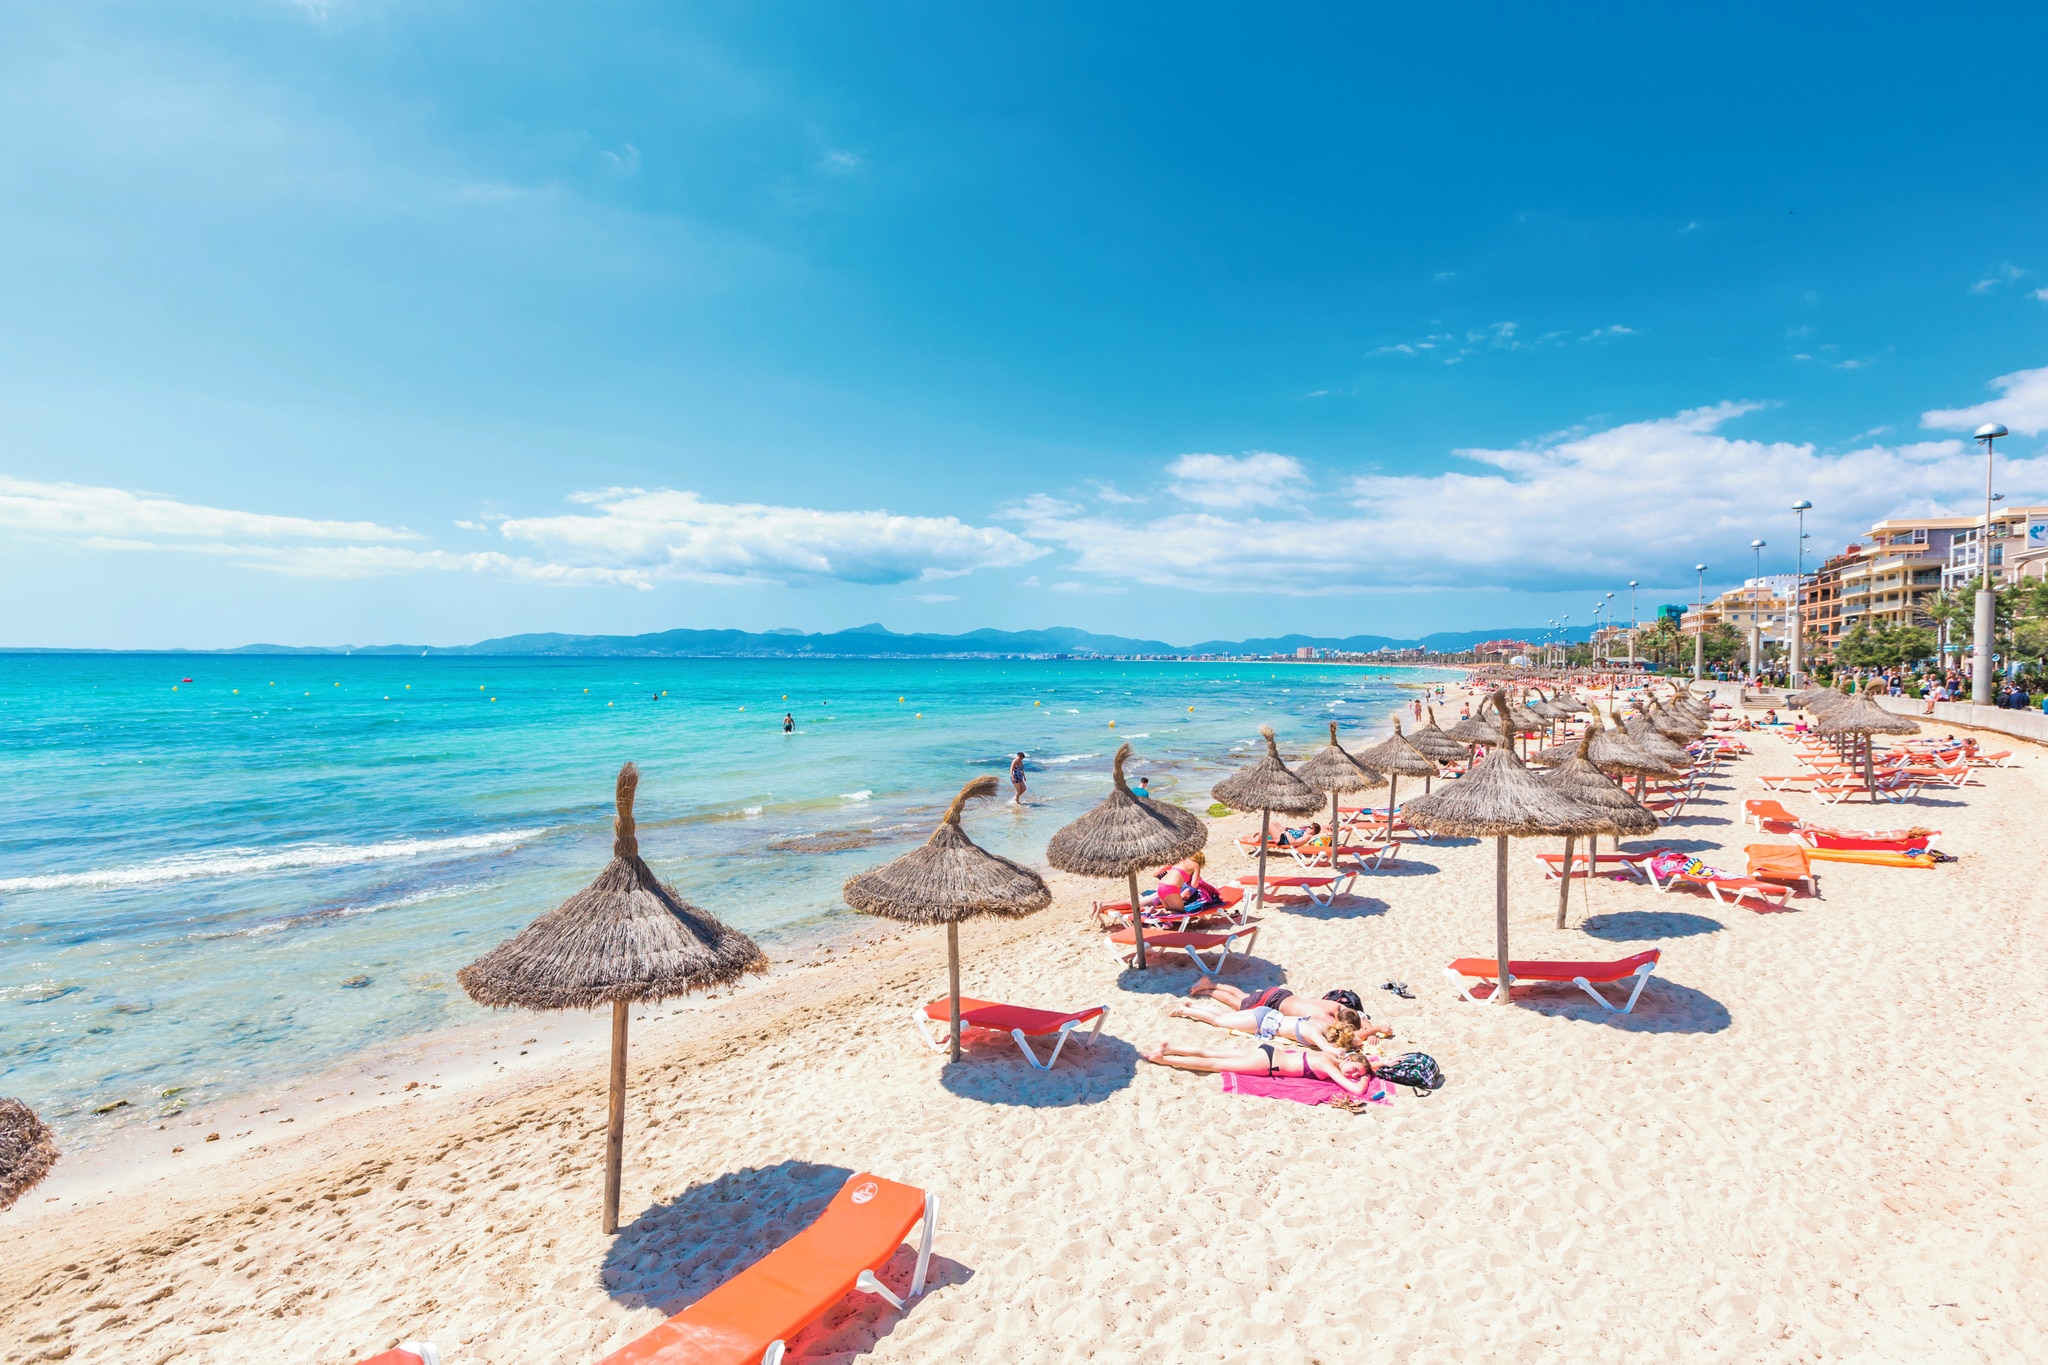 Playa De Palma Holidays 2020 2021 Jet2holidays